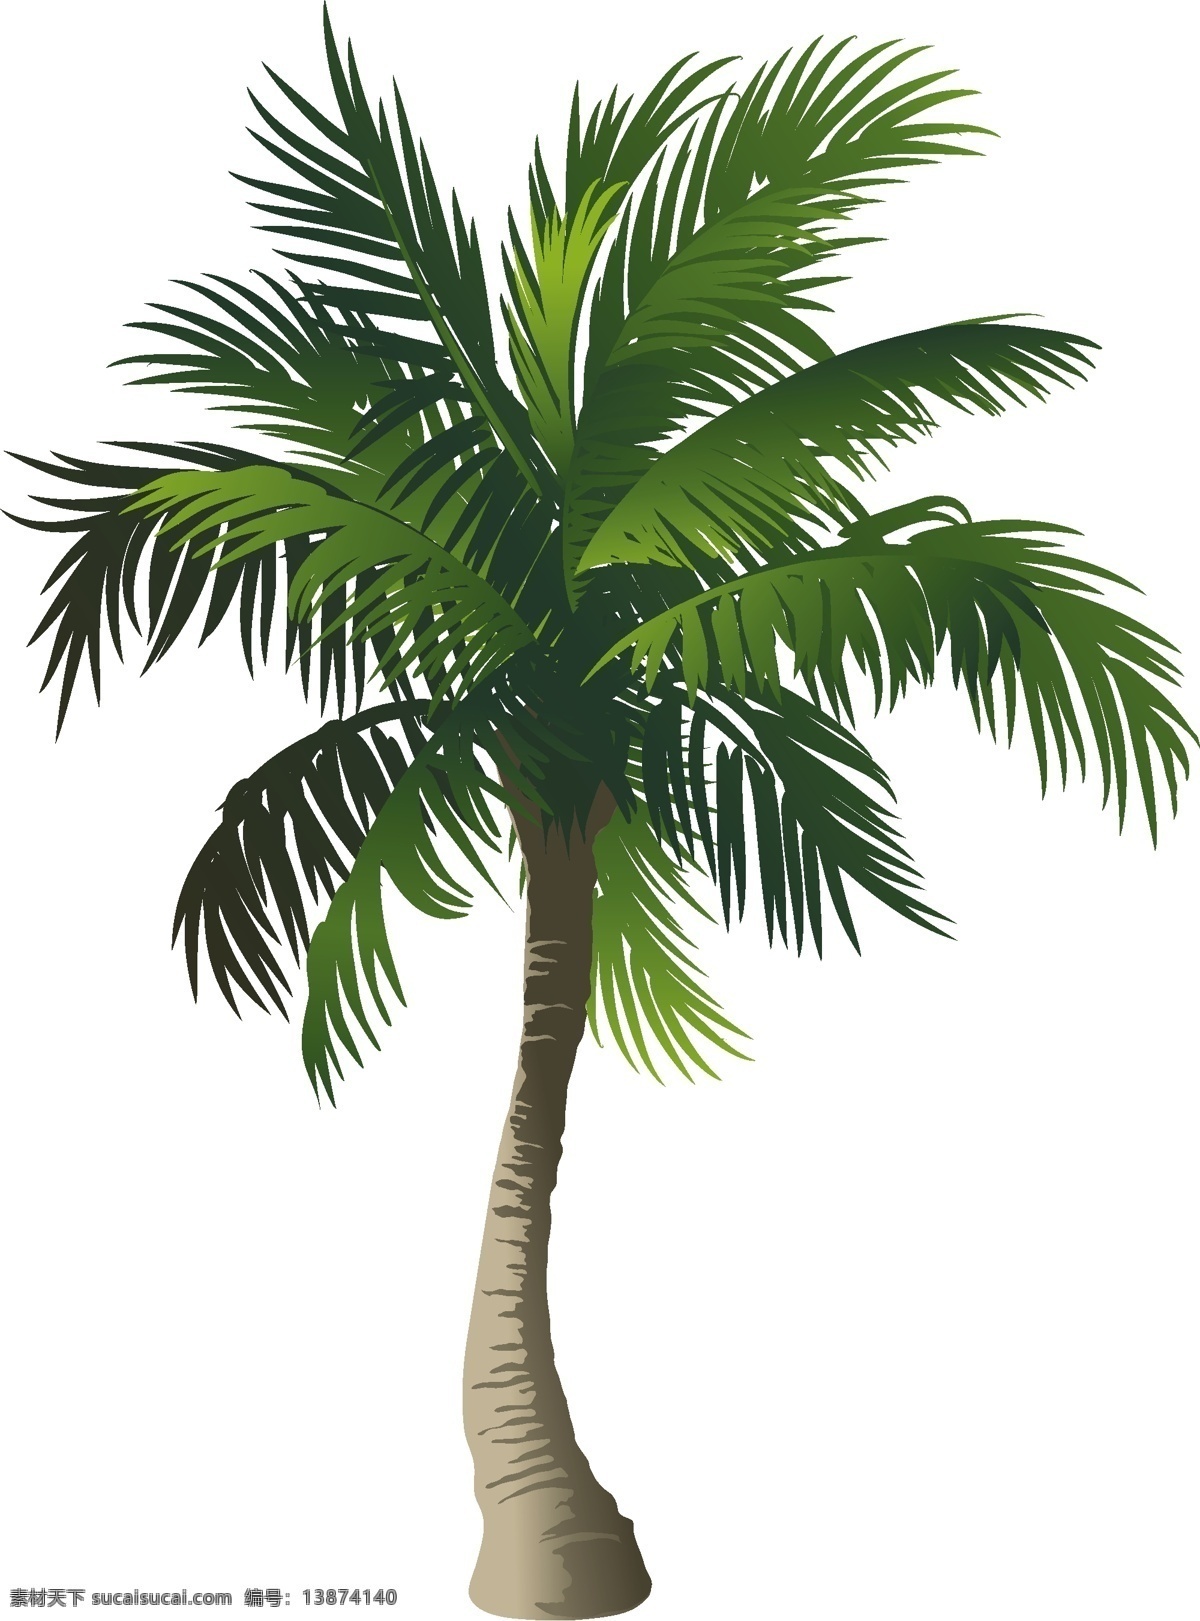 椰树 椰风 椰岛情 椰树矢量 椰树素材